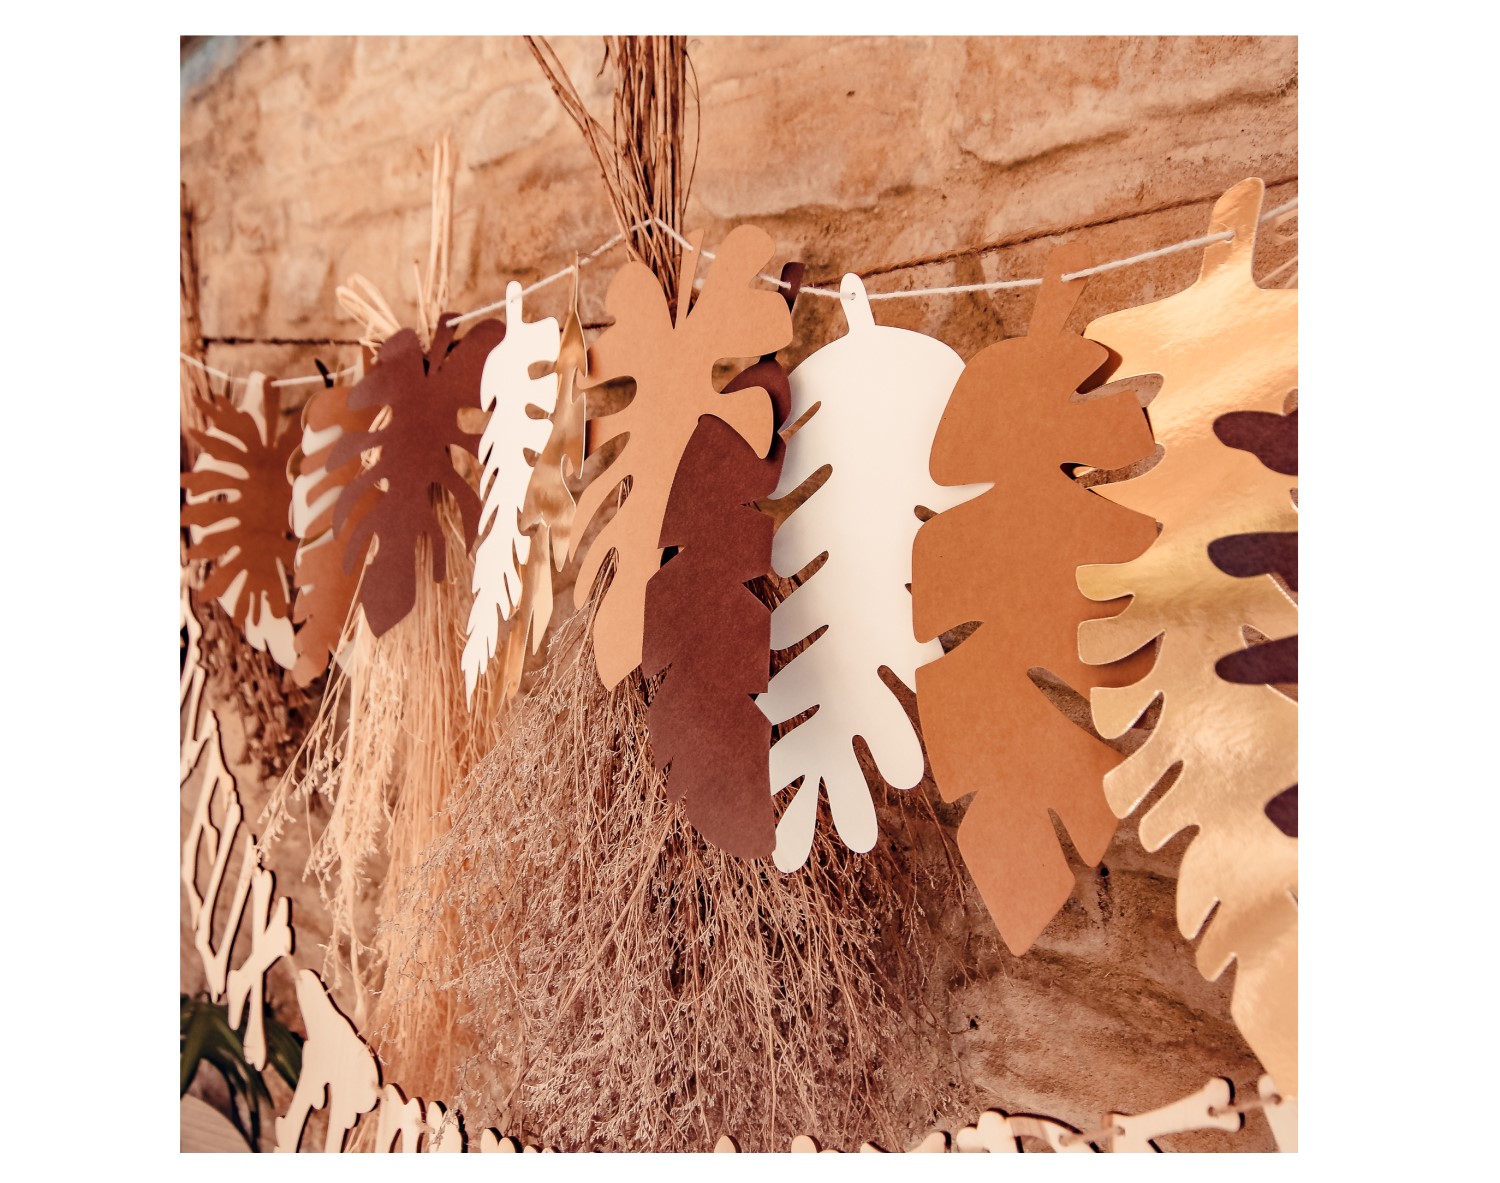 Πολυτελής χάρτινη γιρλάντα για διακόσμηση σε πάρτυ με φύλλα σε γήινες αποχρώσεις